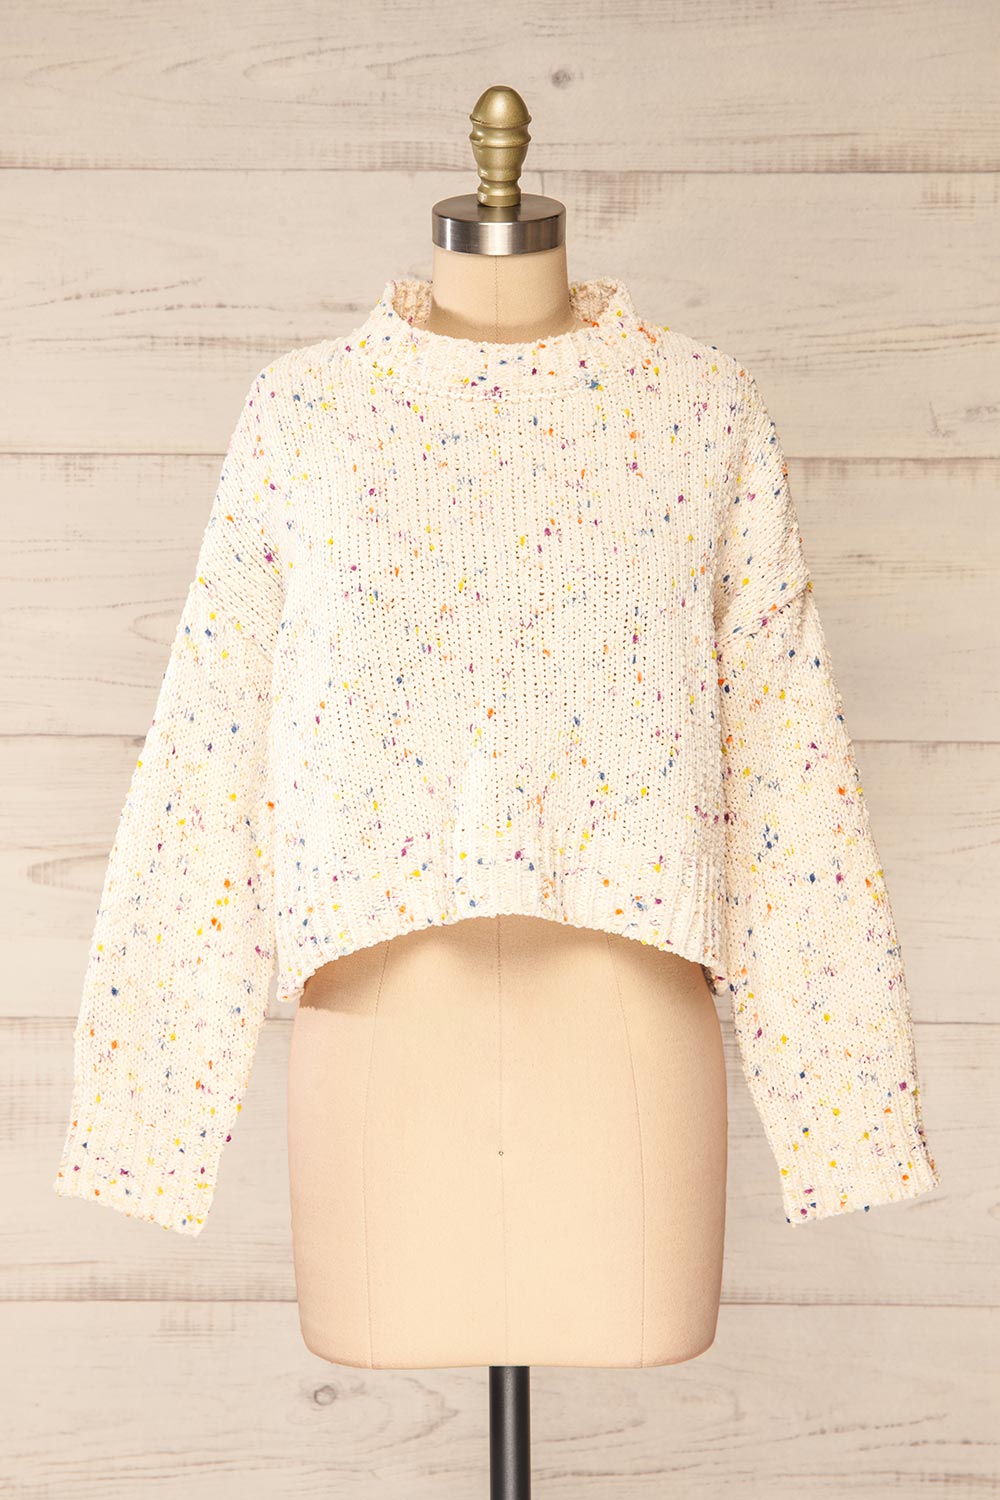 Cupkake Cropped White Knit Sweater w/ Colour Dots | La petite garçonne front view